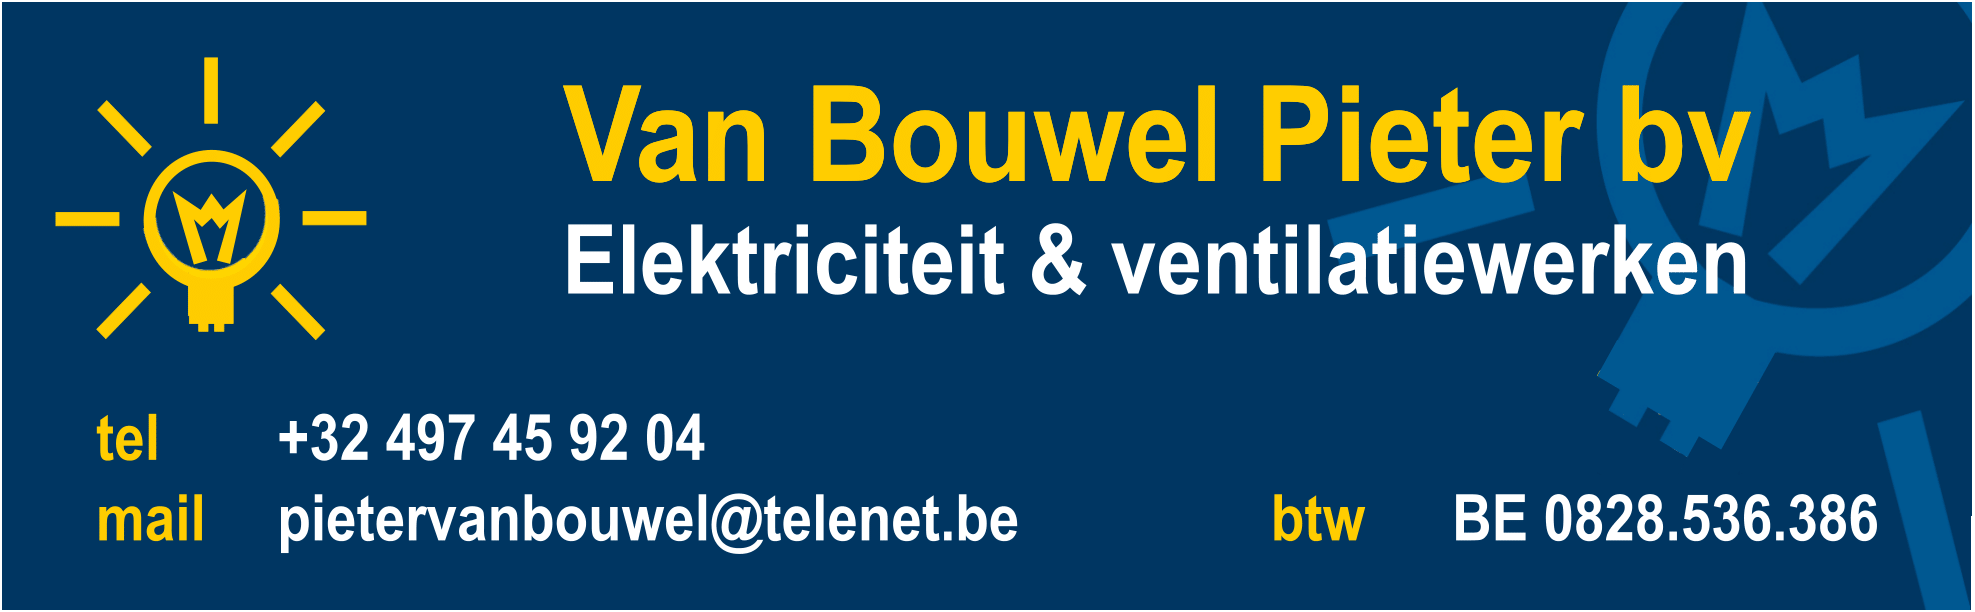 logo Van Bouwel Pieter bv